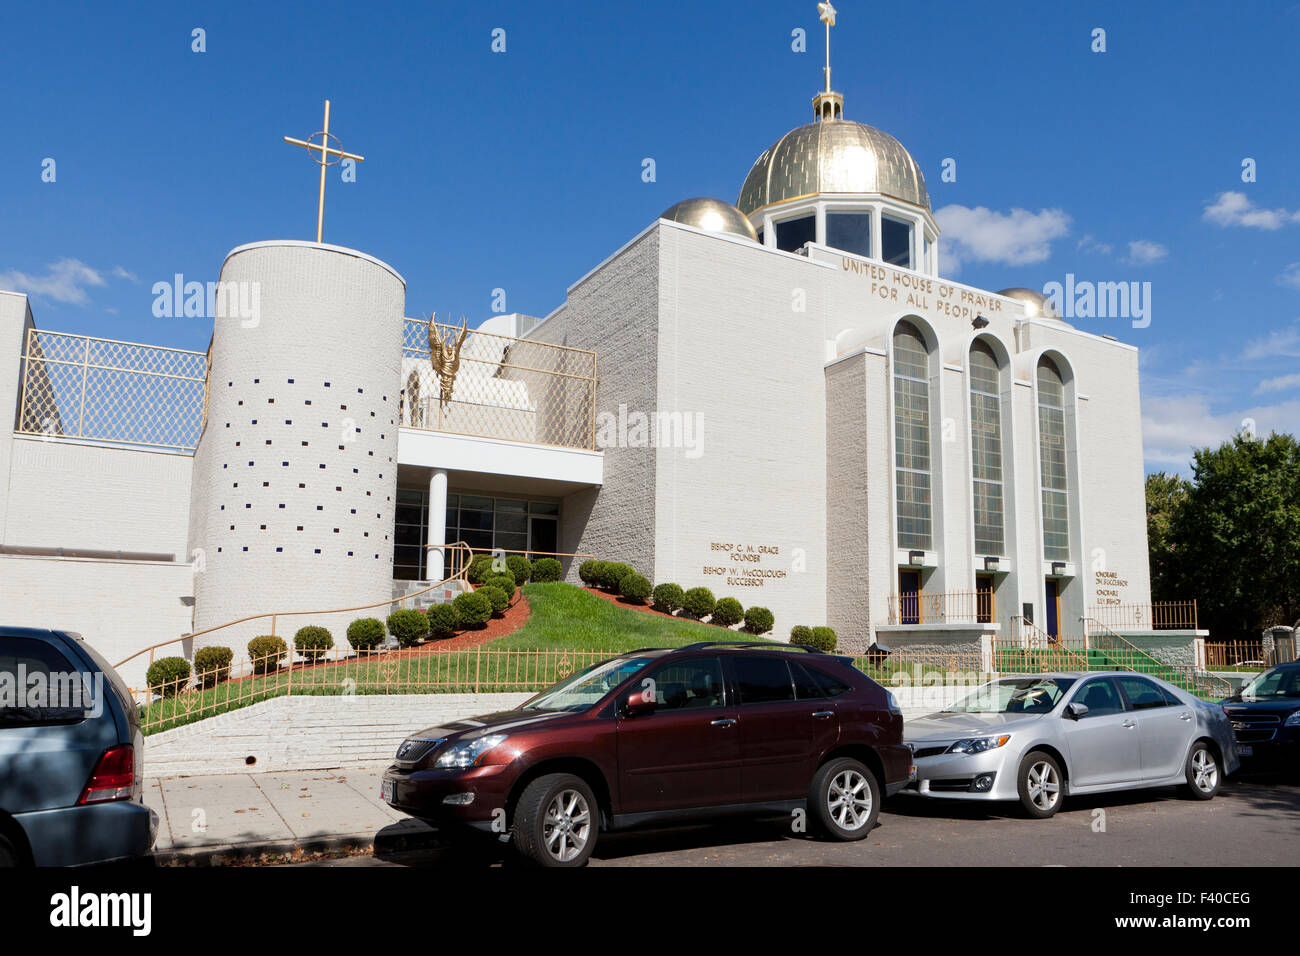 United Maison de prière pour tous les peuples de l'Eglise sur le rocher de la Foi Apostolique - Washington, DC USA Banque D'Images